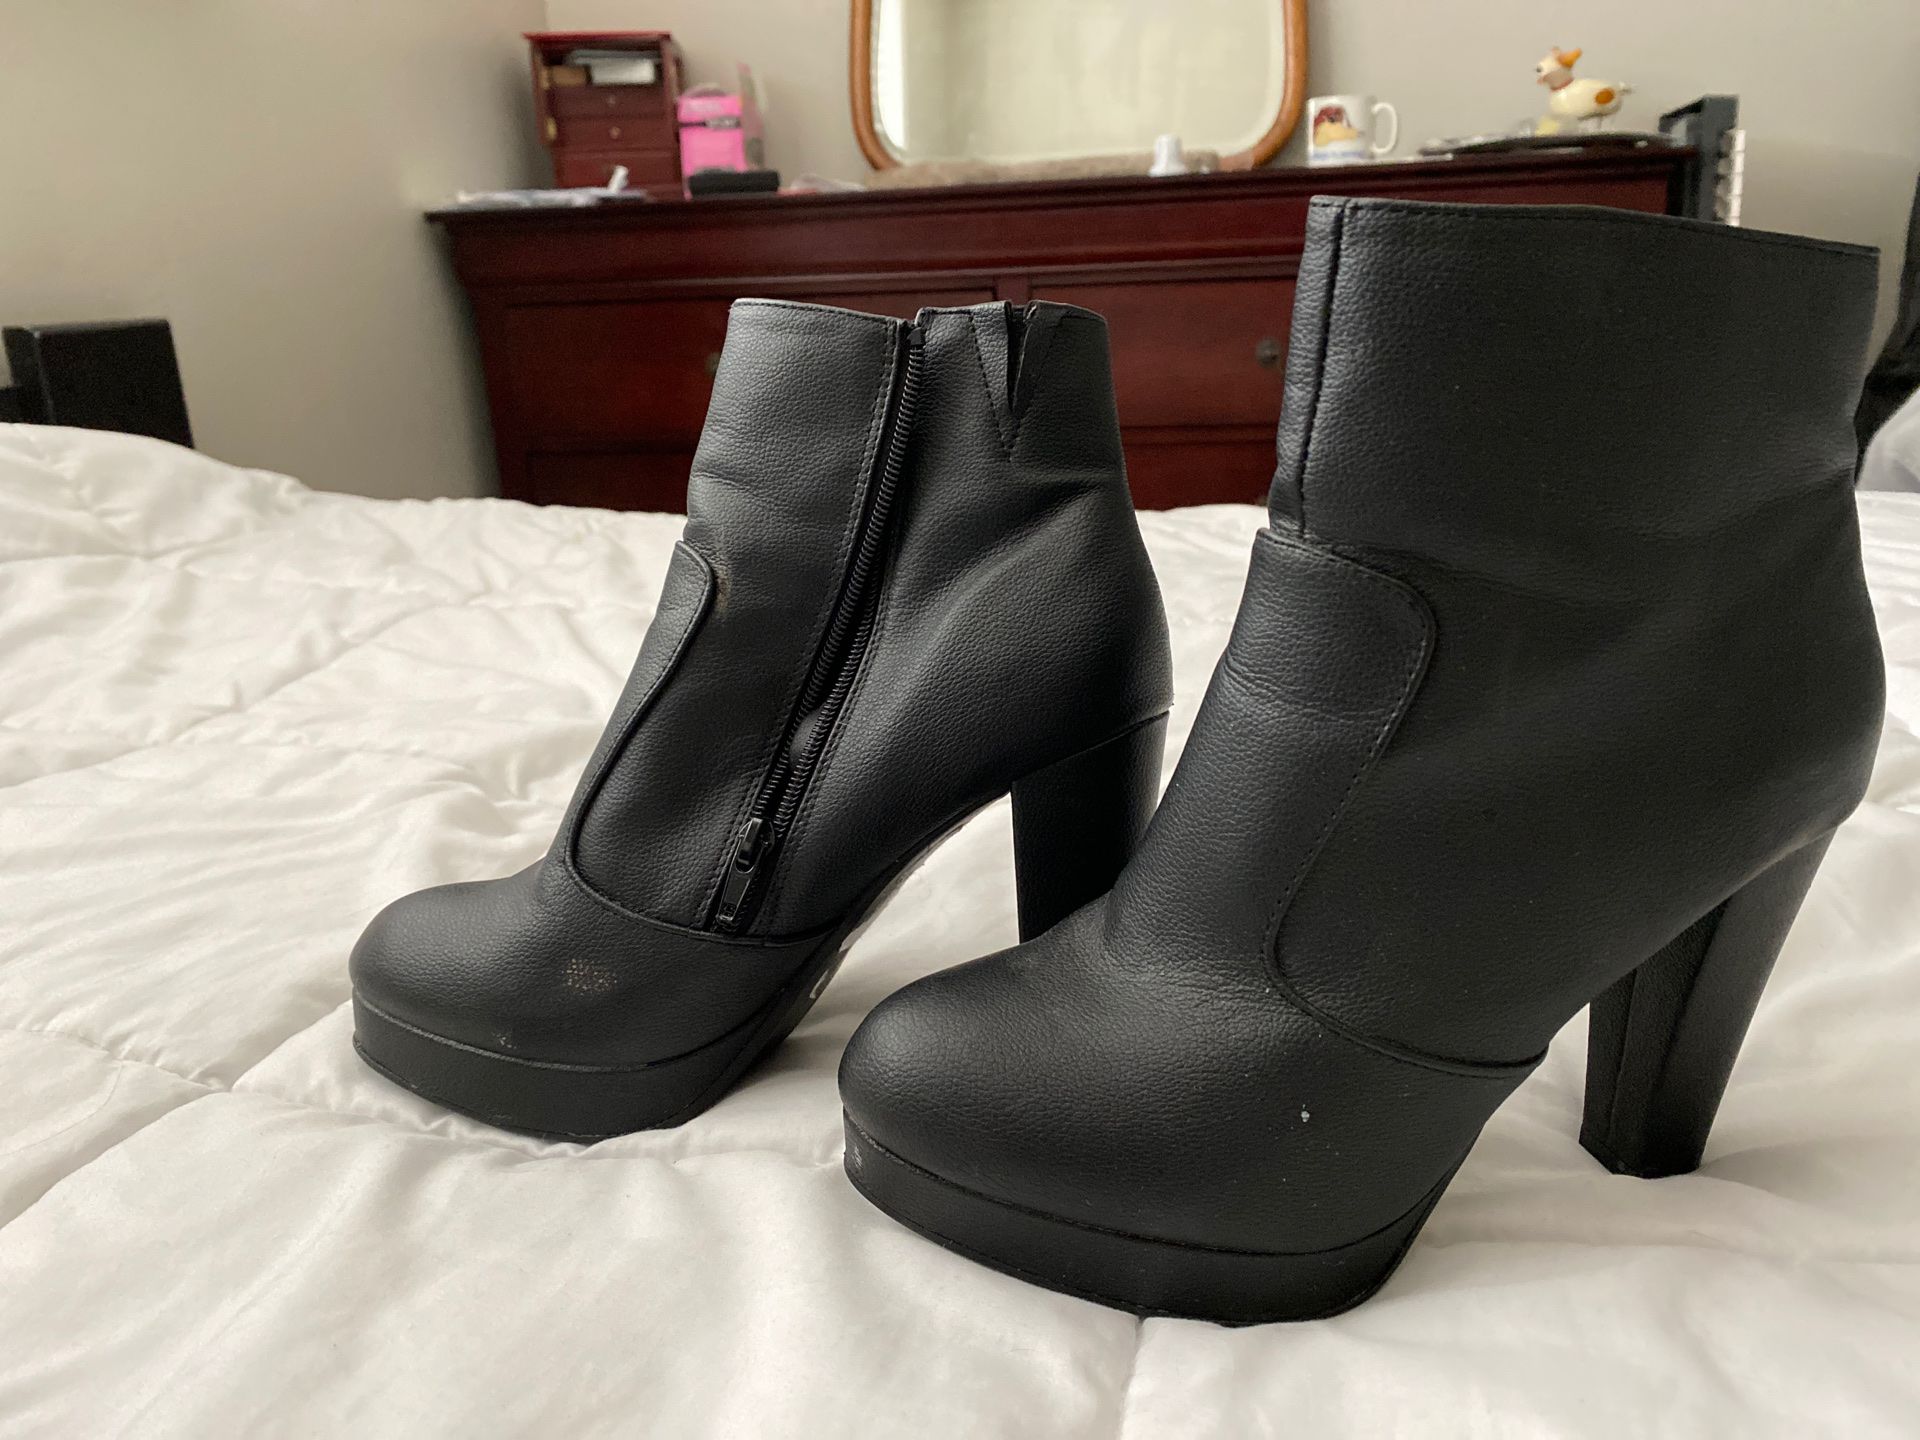 Black ankle boot heels